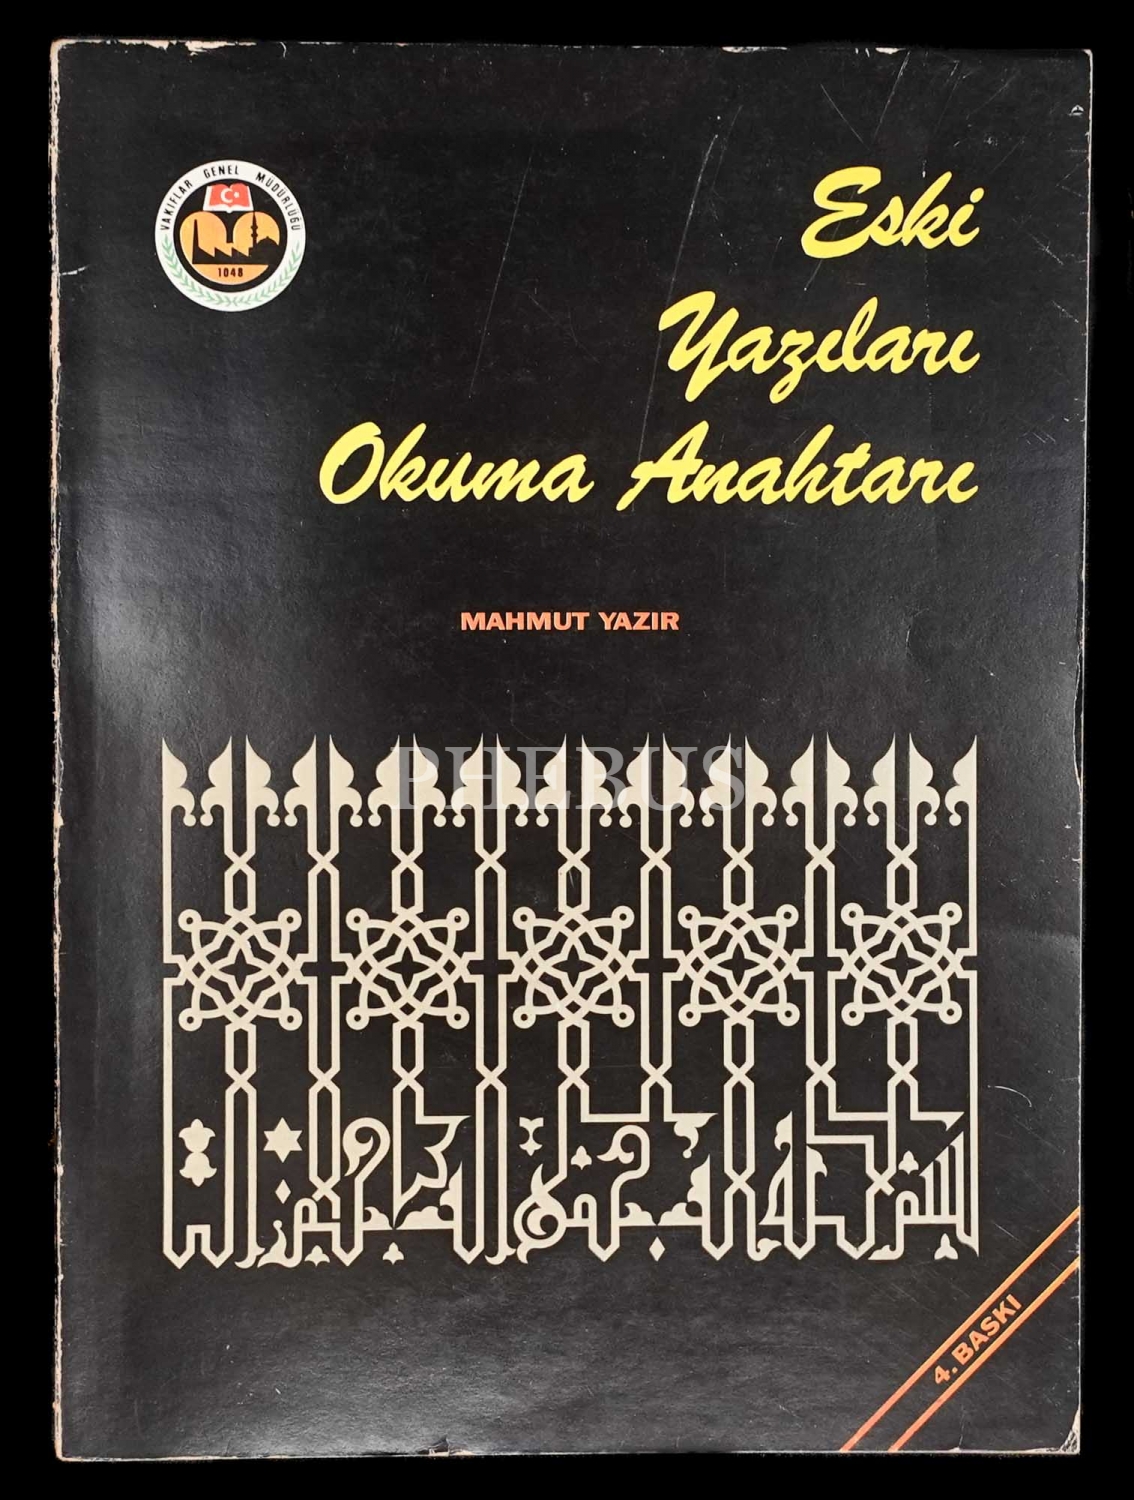 ESKİ YAZILARI OKUMA ANAHTARI, Mahmut Yazır, 1983, Vakıflar Genel Müdürlüğü, 288 sayfa, 20x28 cm...